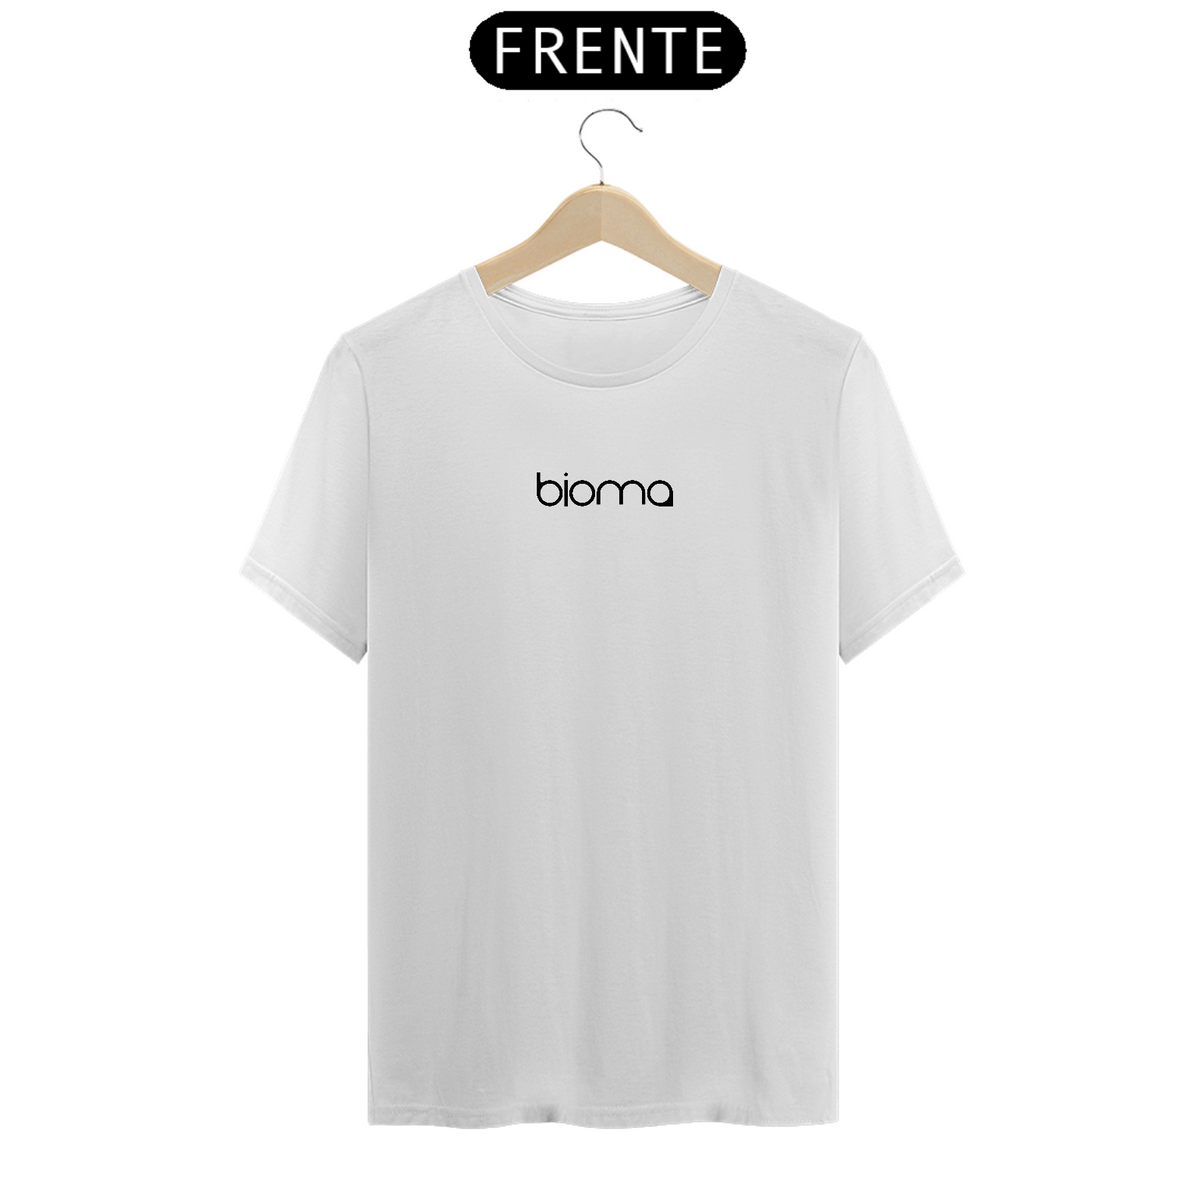 Nome do produto: Camiseta Coletivo Bioma Classic